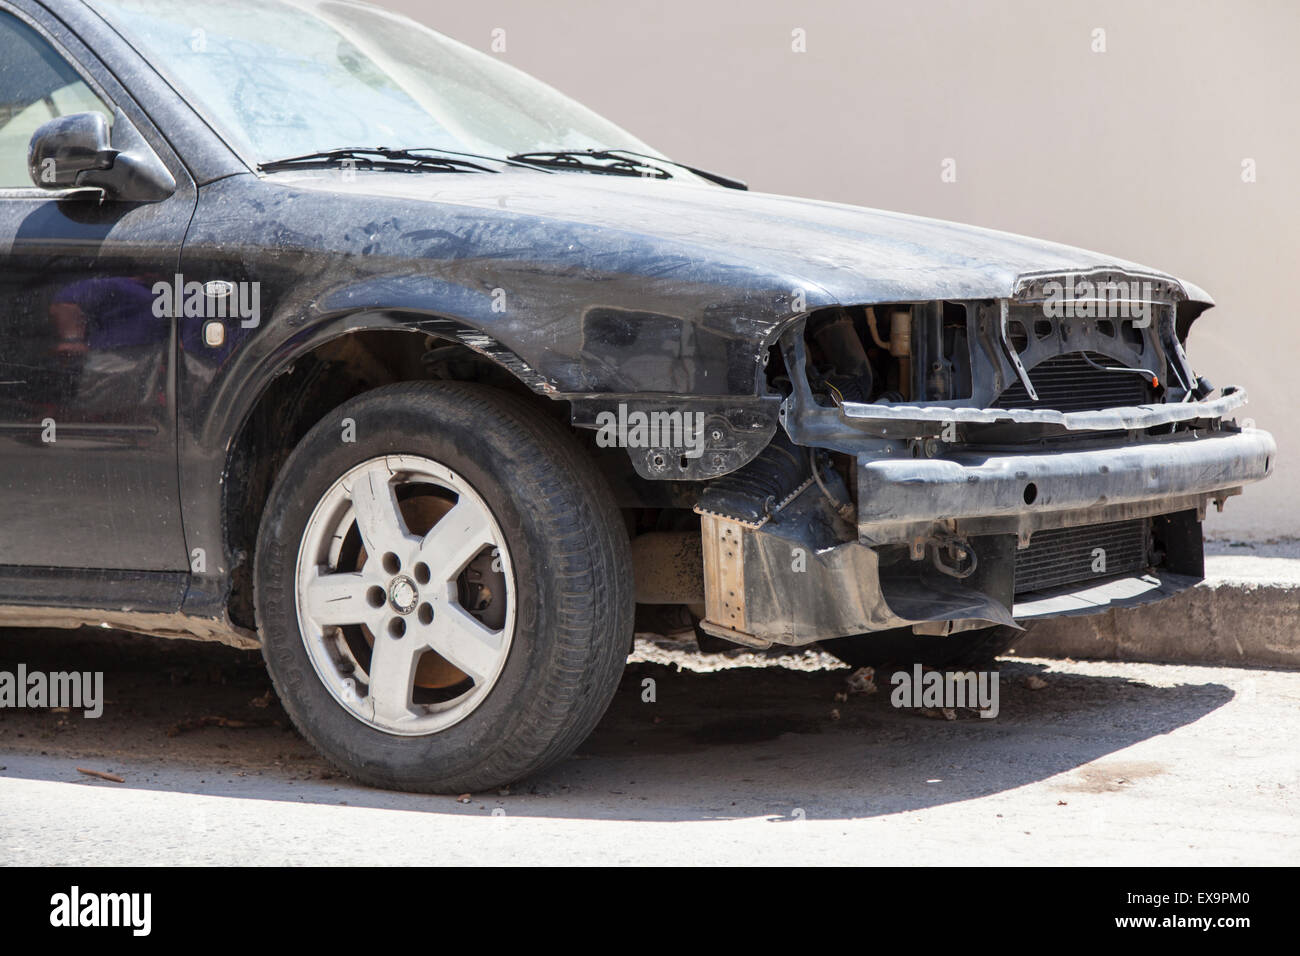 Cittadina di Chania, Creta, Grecia - 17 giugno 2013: si è schiantato abbandonato l'auto sulla strada Foto Stock